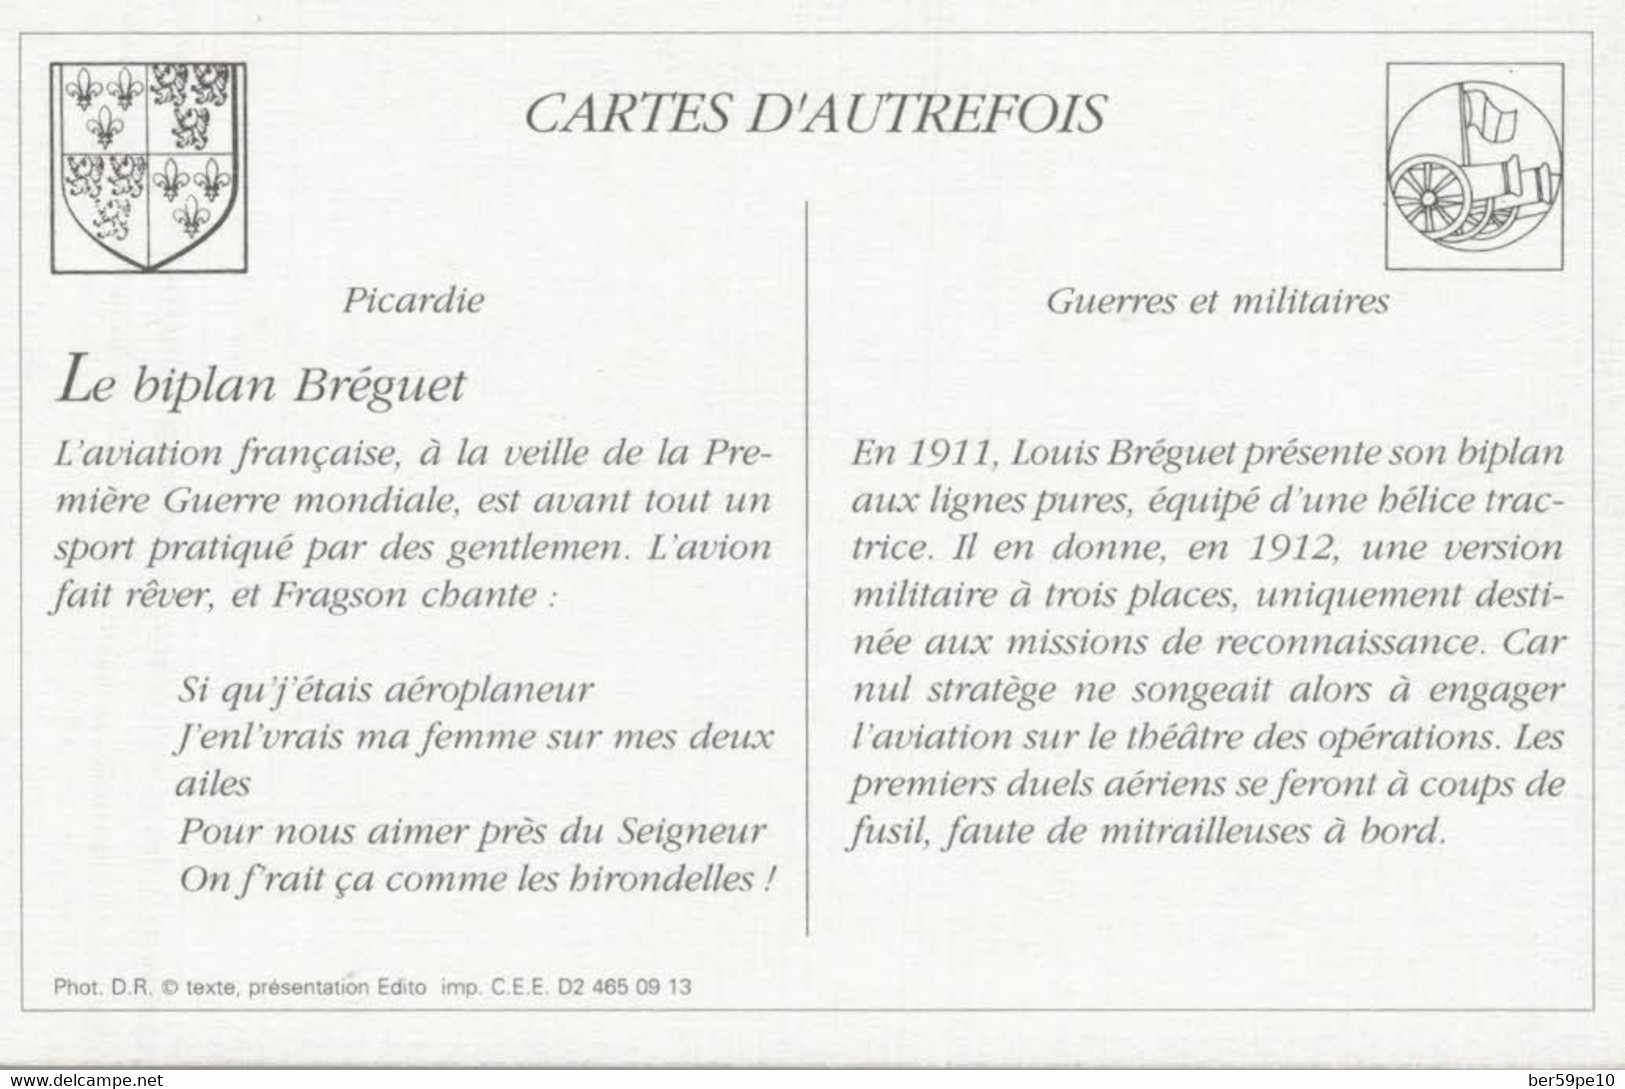 CARTES D'AUTREFOIS GUERRES ET MILITAIRES PICARDIE BIPLAN BREQUET - Picardie